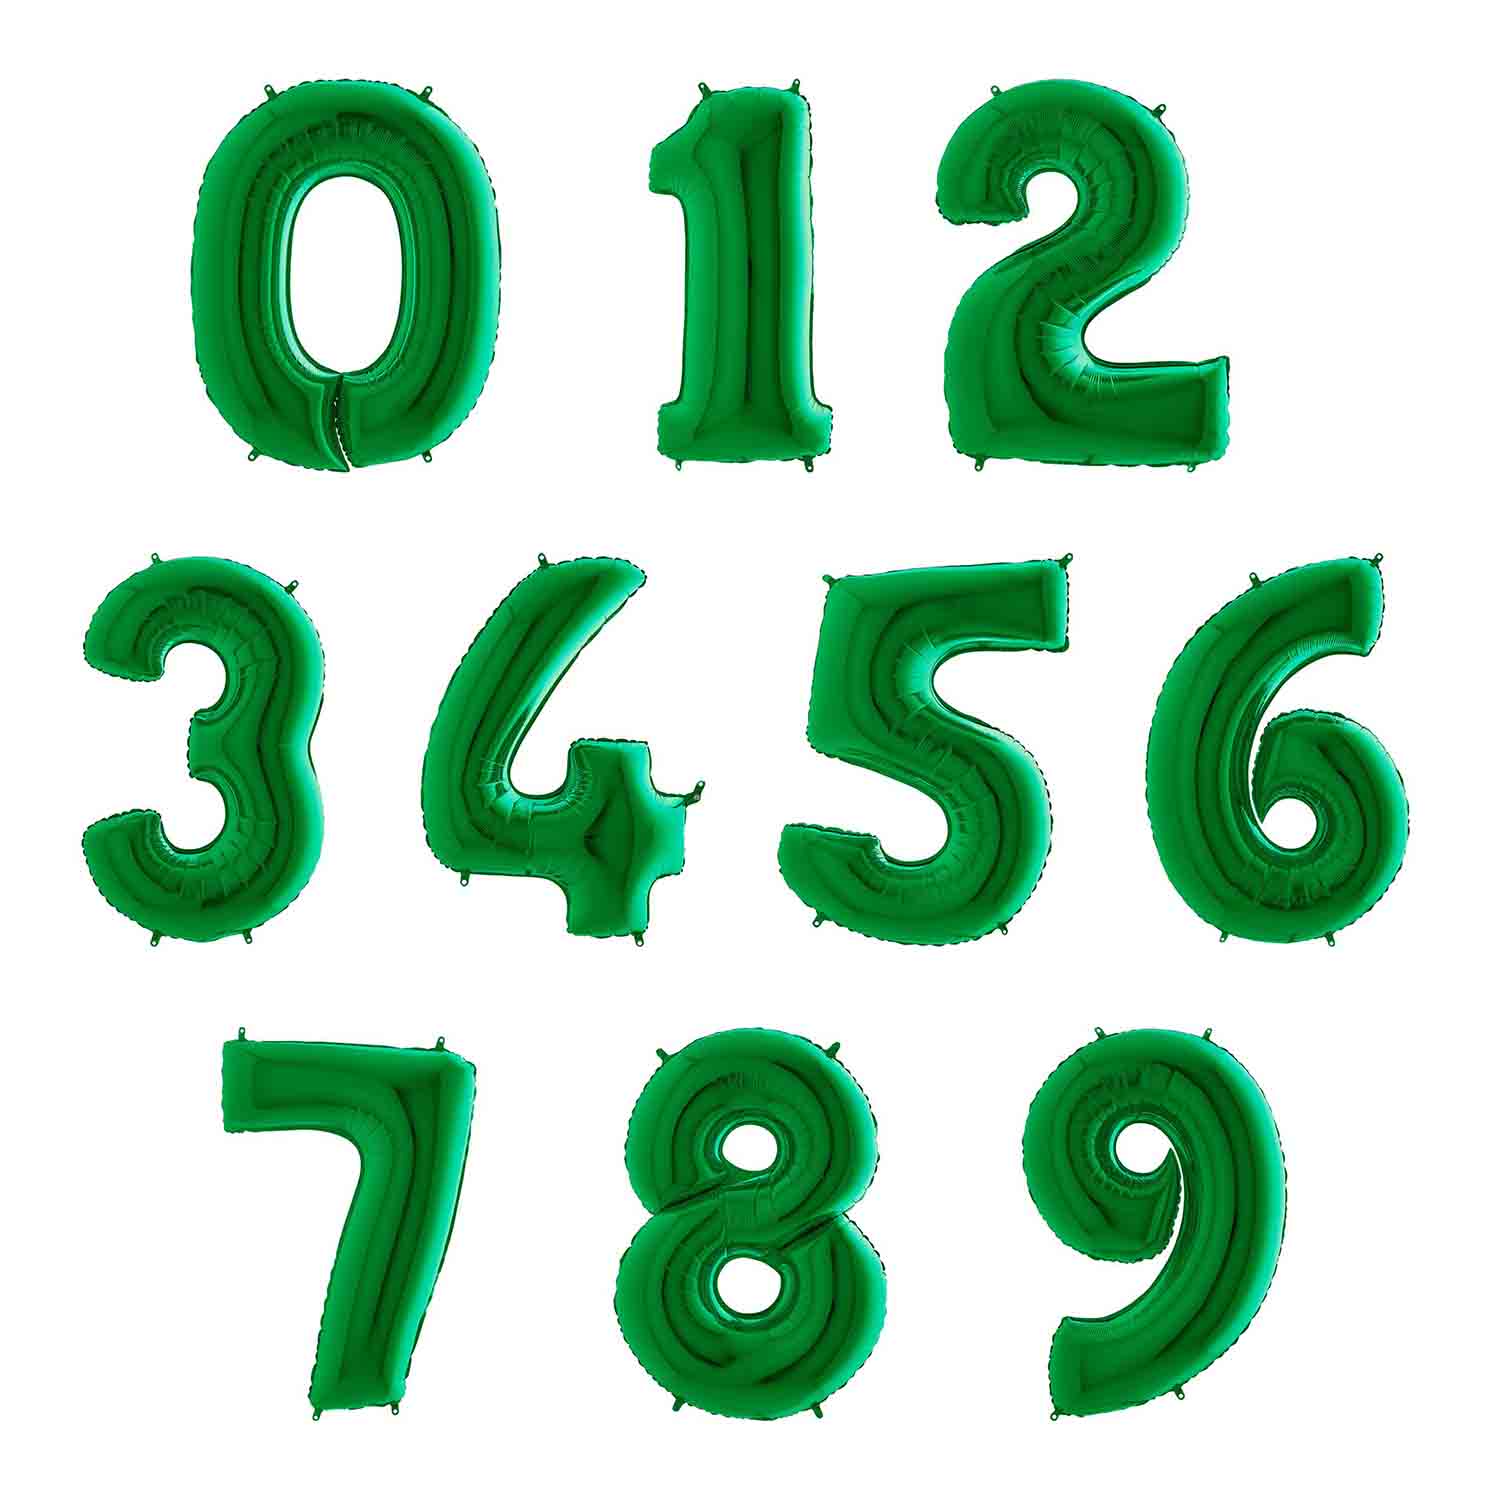 Шары цифра цвета. Зеленая цифра фольга Грабо. Шар цифра зеленая Грабо. Шар цифра фольга зеленый 1 2. Цифра 7 фольгированная зеленая.